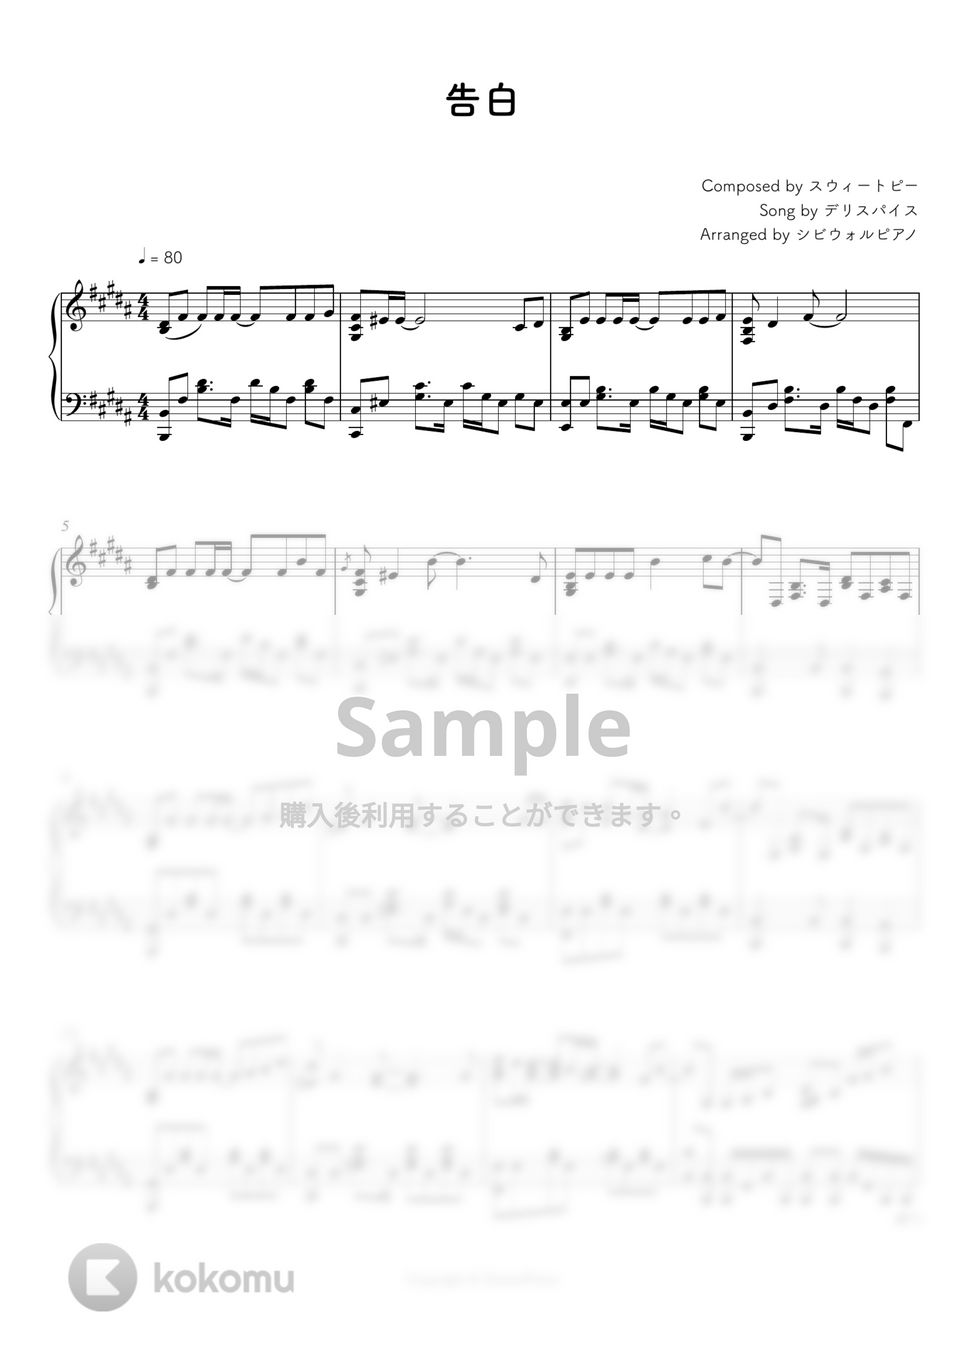 デリスパイス - 告白 by シビウォルピアノ